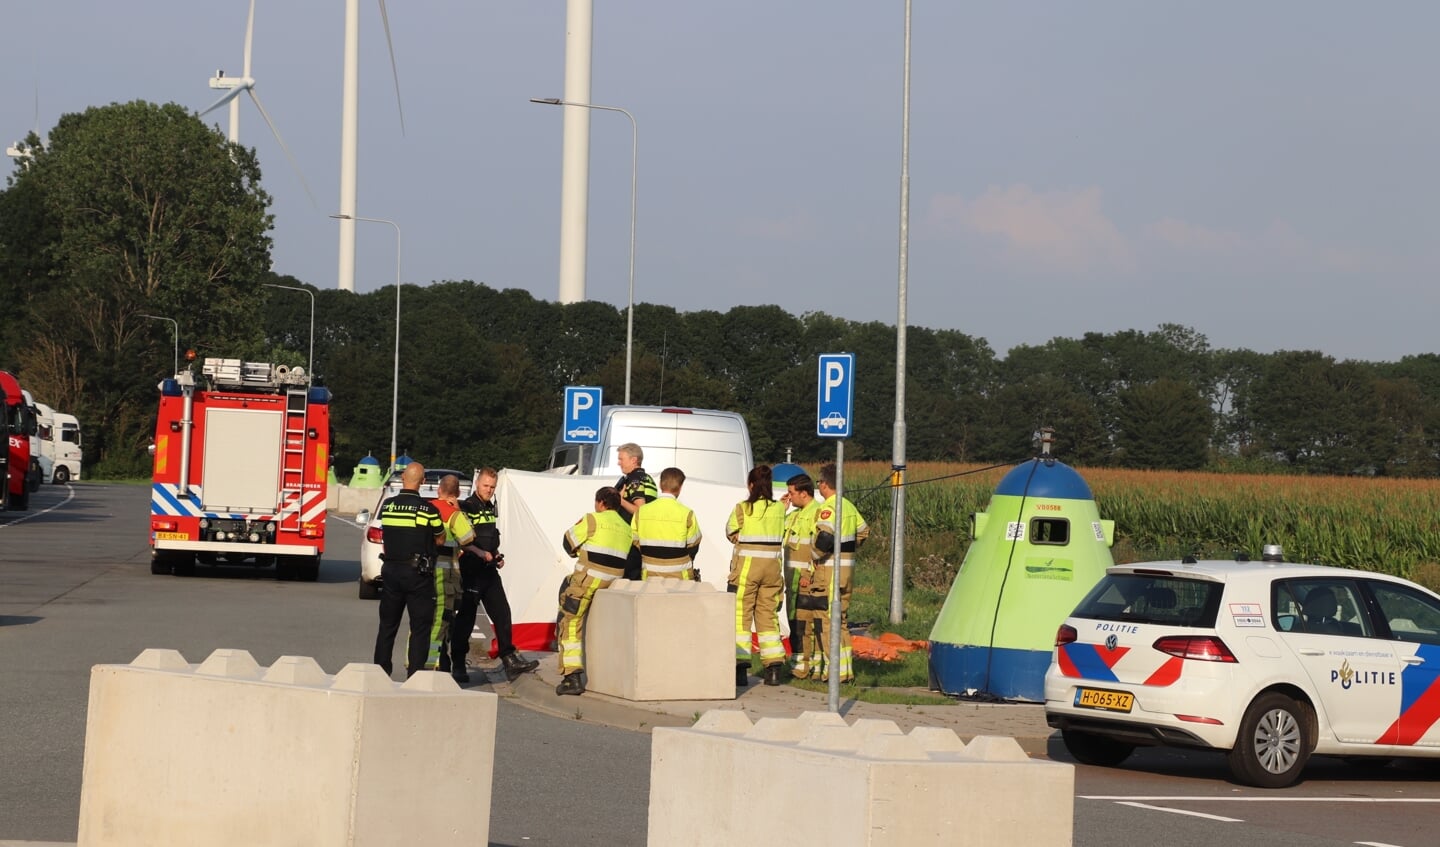 De hulpdiensten zijn donderdag 5 augustus opgeroepen voor een incident op de parkeerplaats Shell Molenkamp